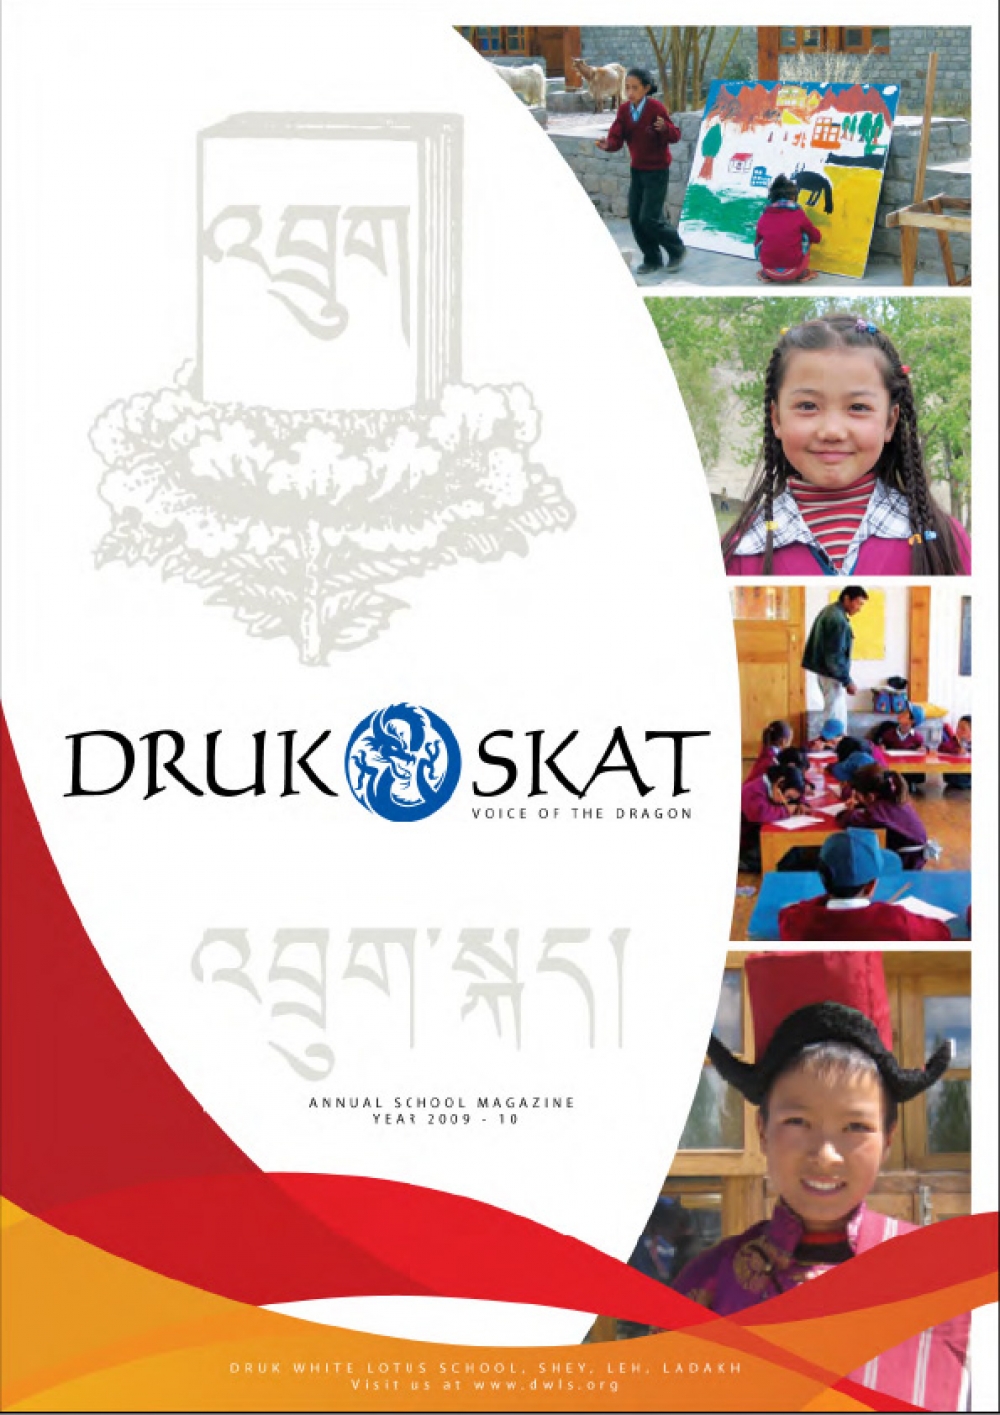 Drukskat Issue 1 (2009 - 2010)